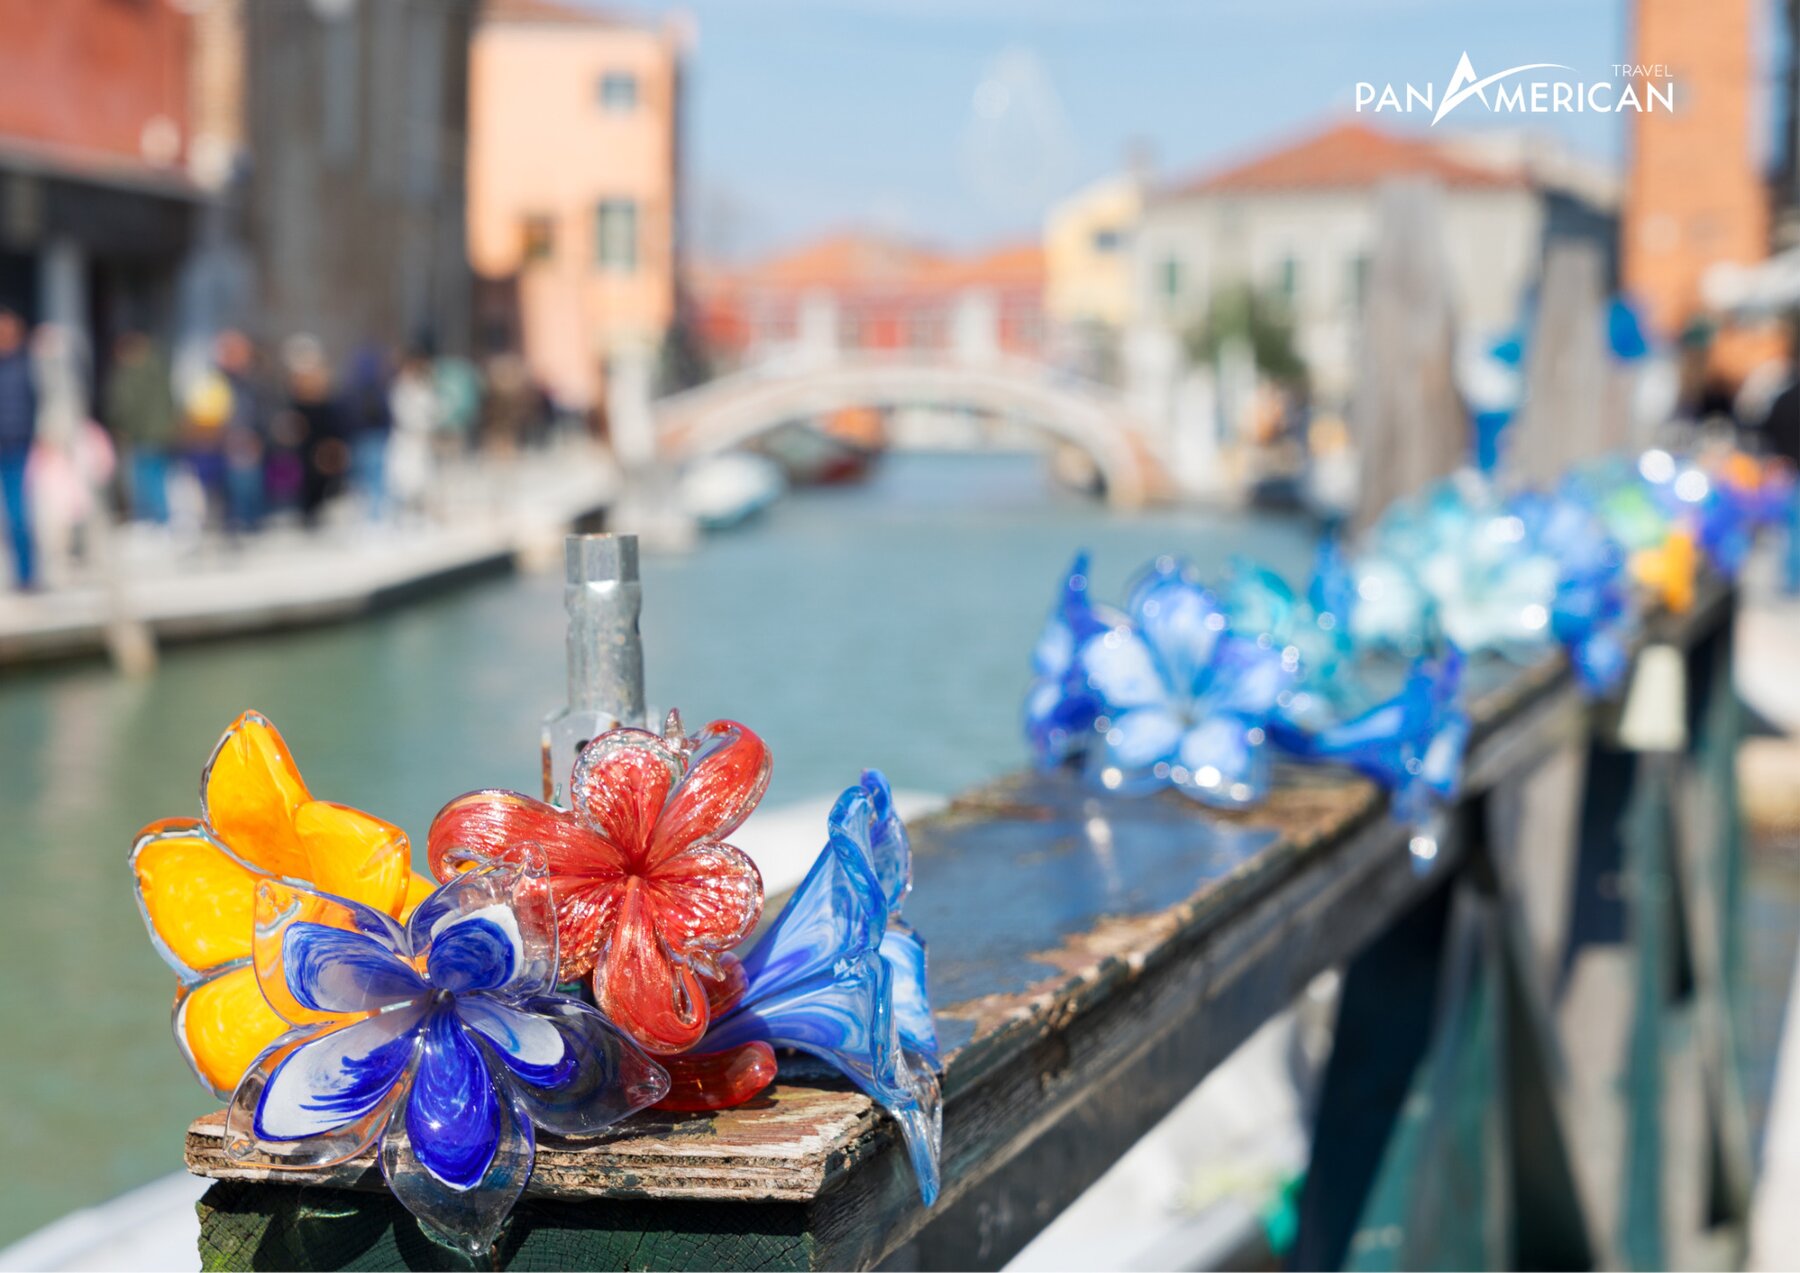 Venice – Thành phố của tình yêu - Gallery Image